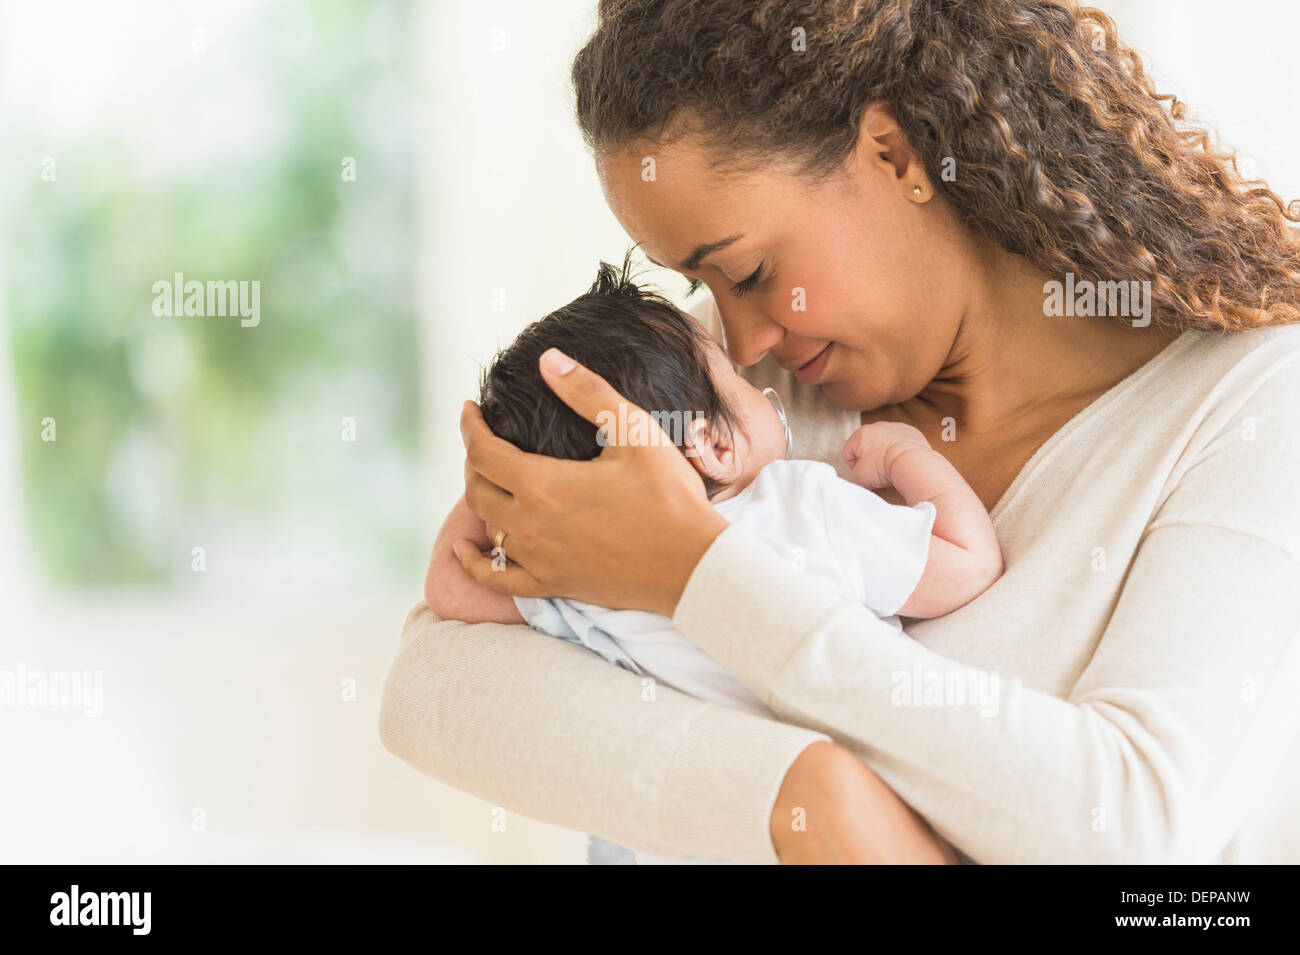 Hispanic mother holding fils infantile Banque D'Images